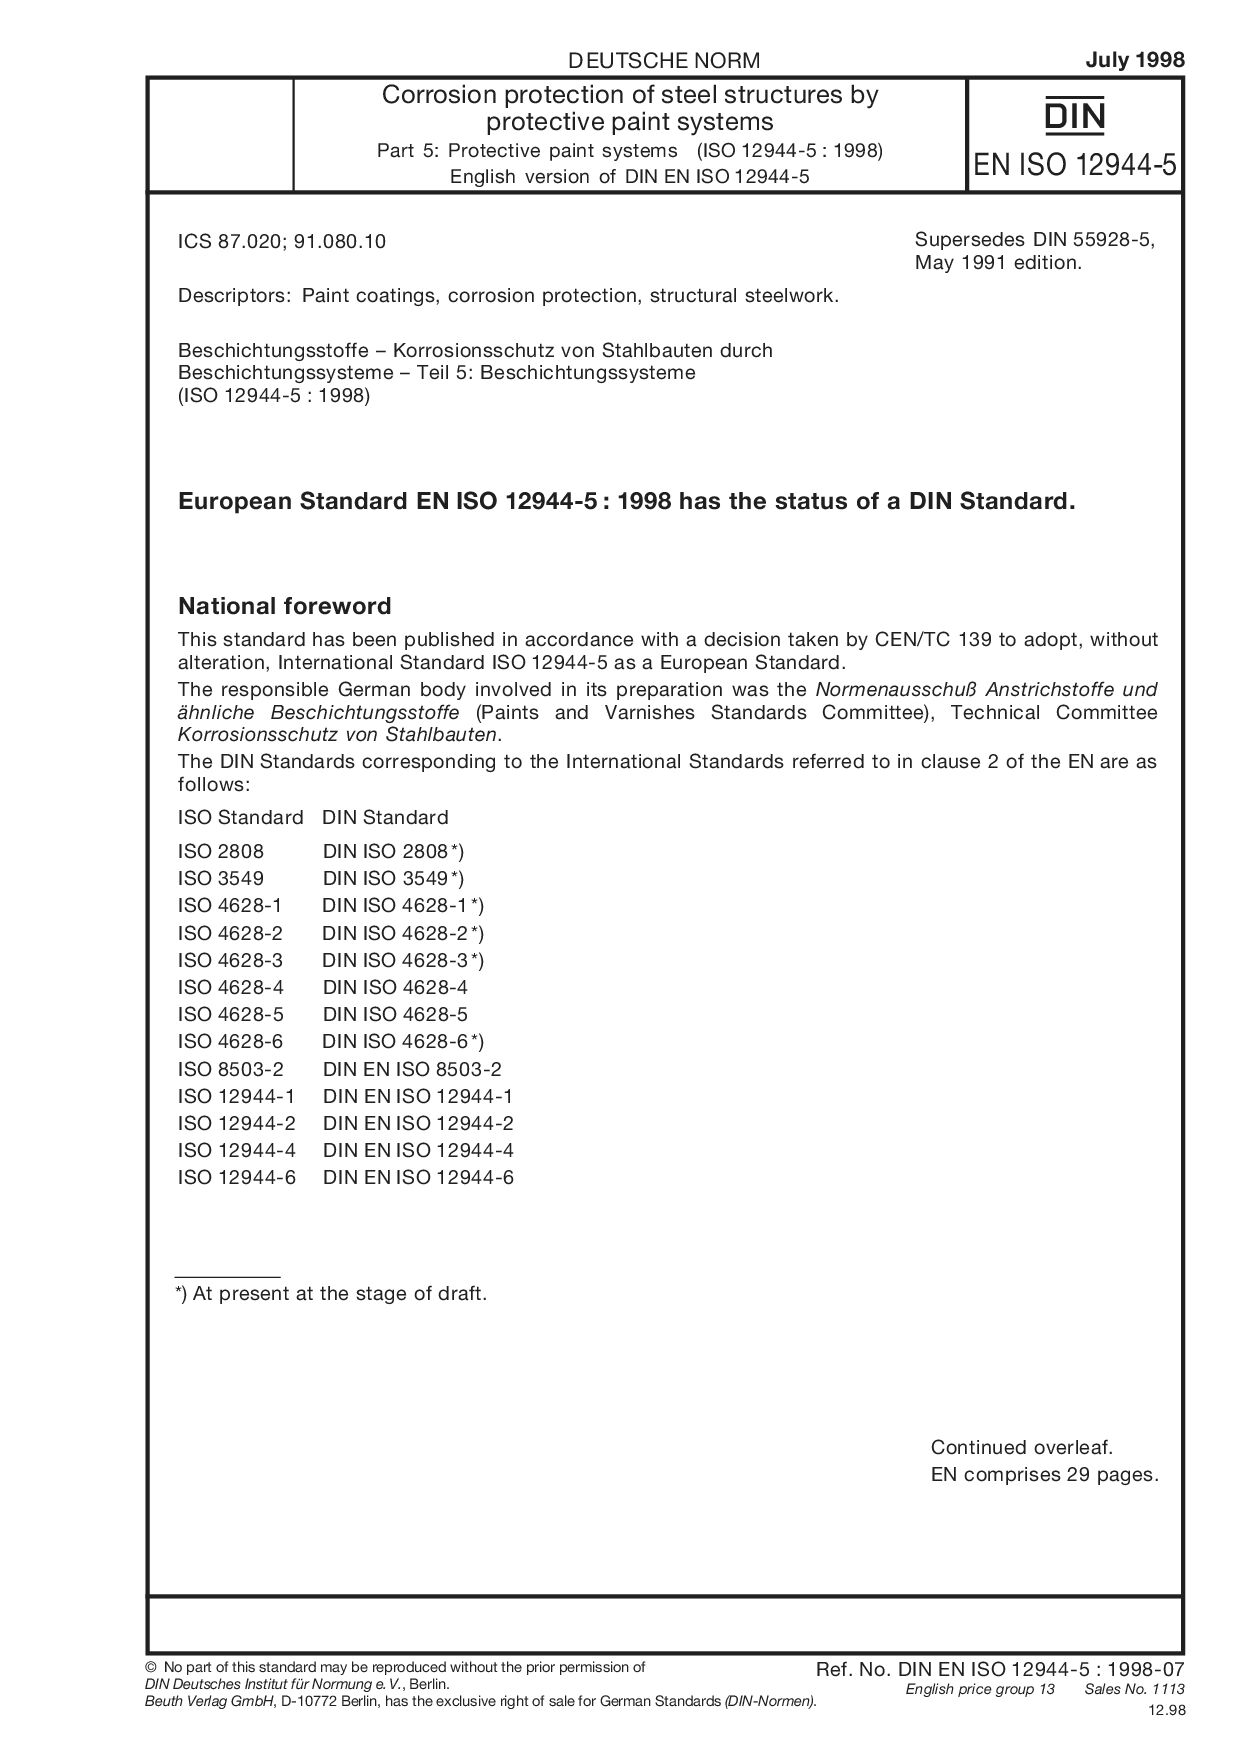 DIN EN ISO 12944-5:1998